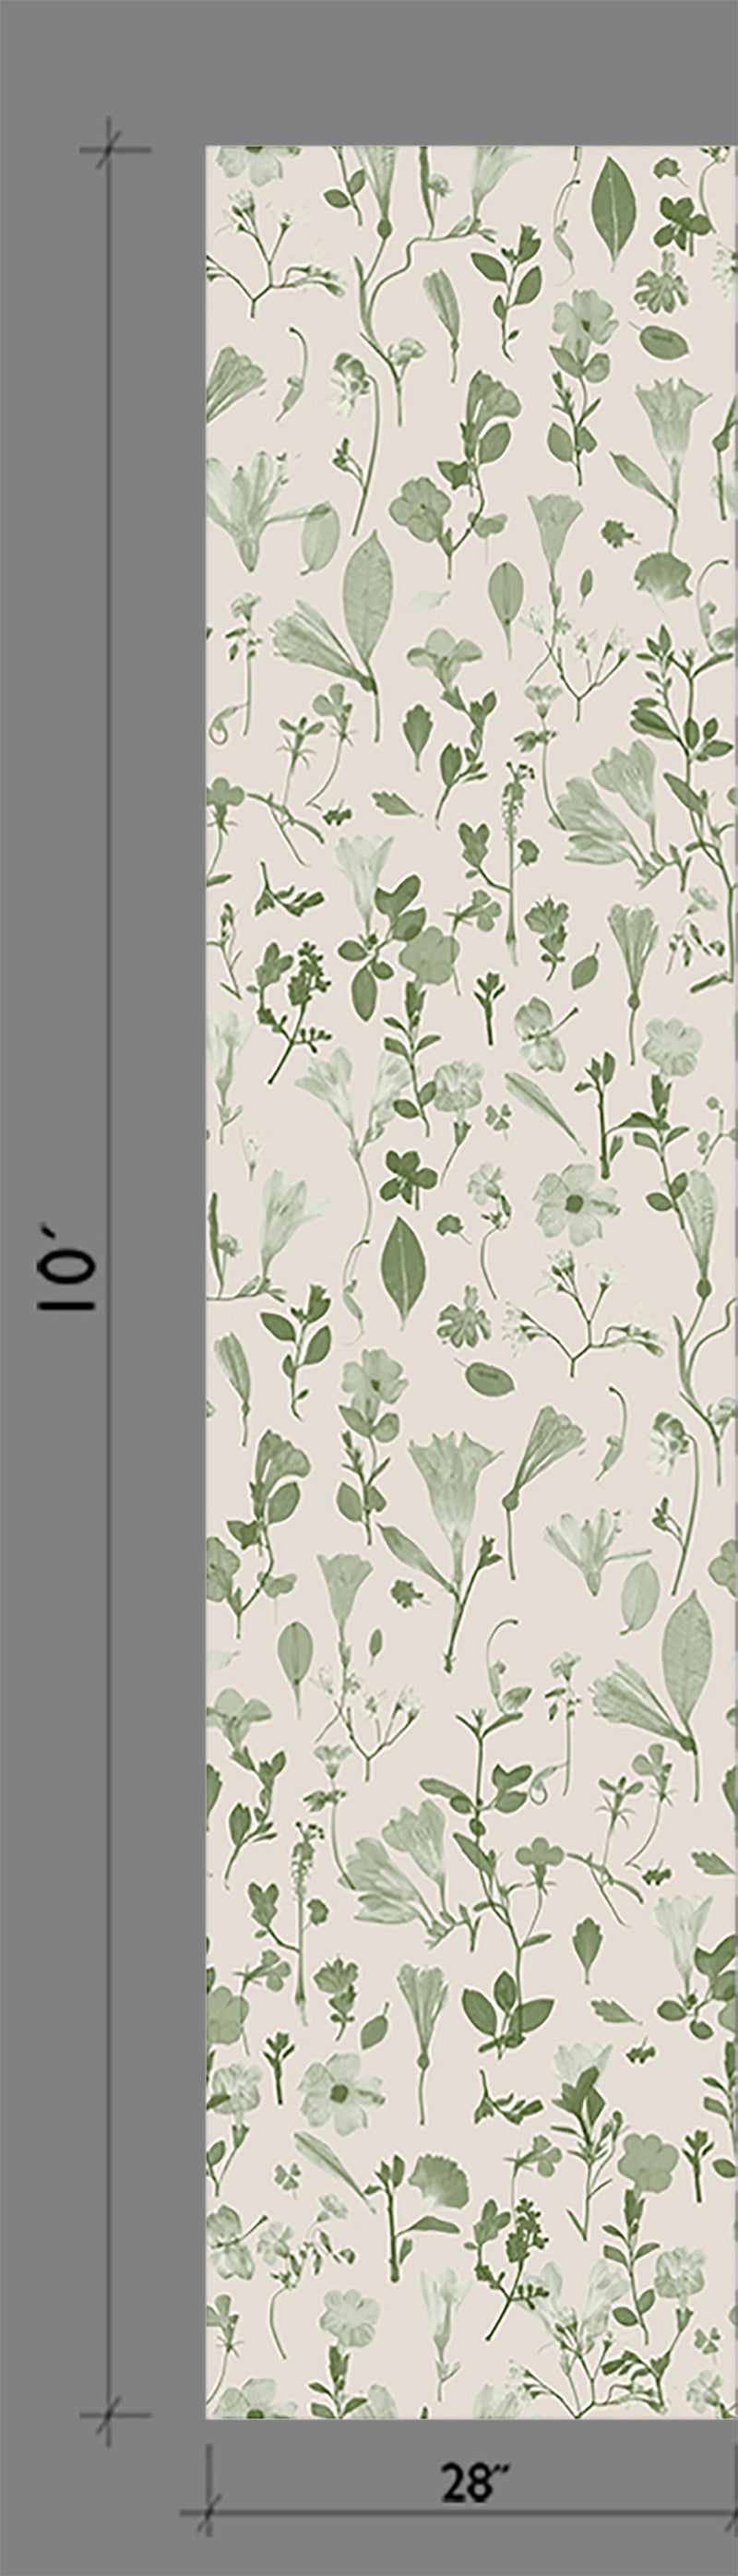 Botanic Bloom© Wallpaper in Sage